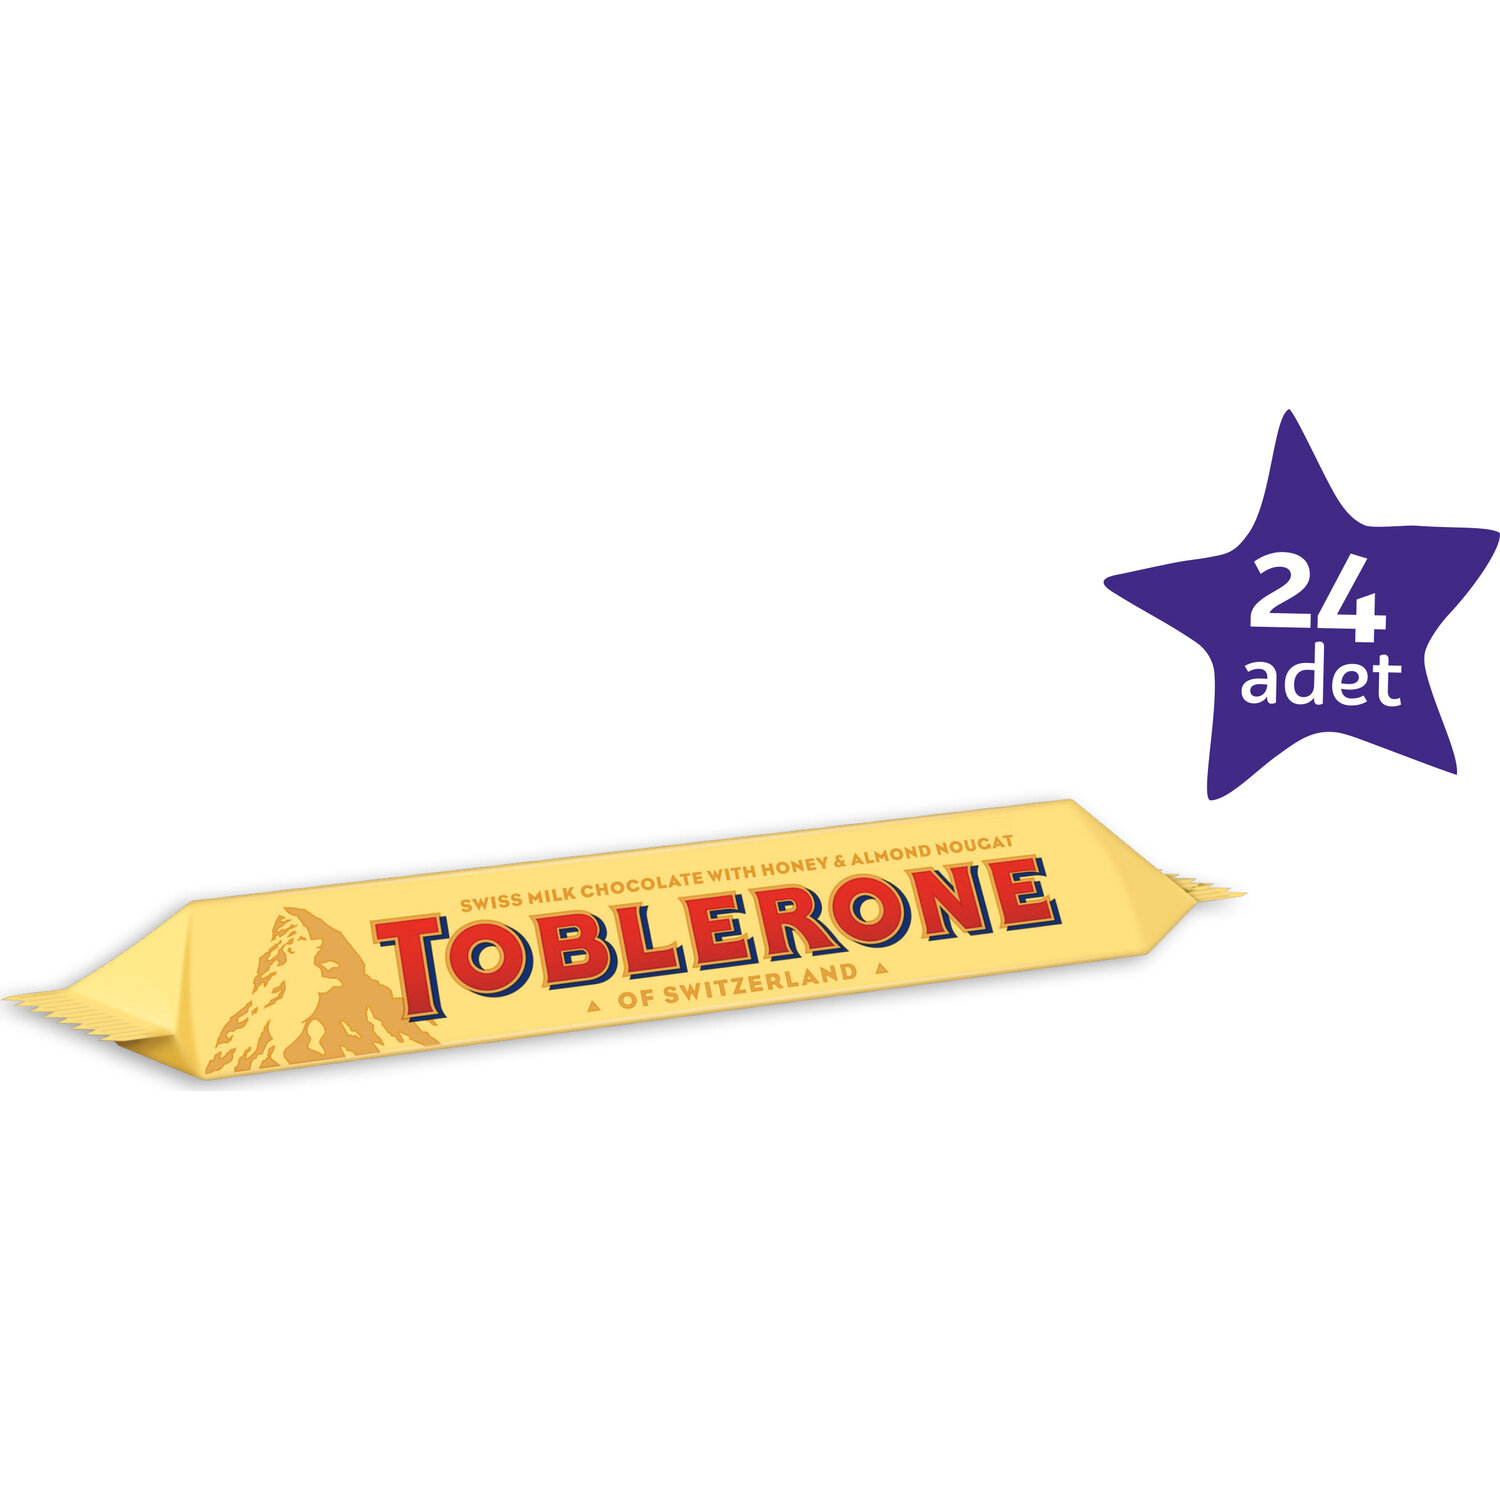 Toblerone Sütlü Çikolata 35 gr 24'lü paket Fiyatı